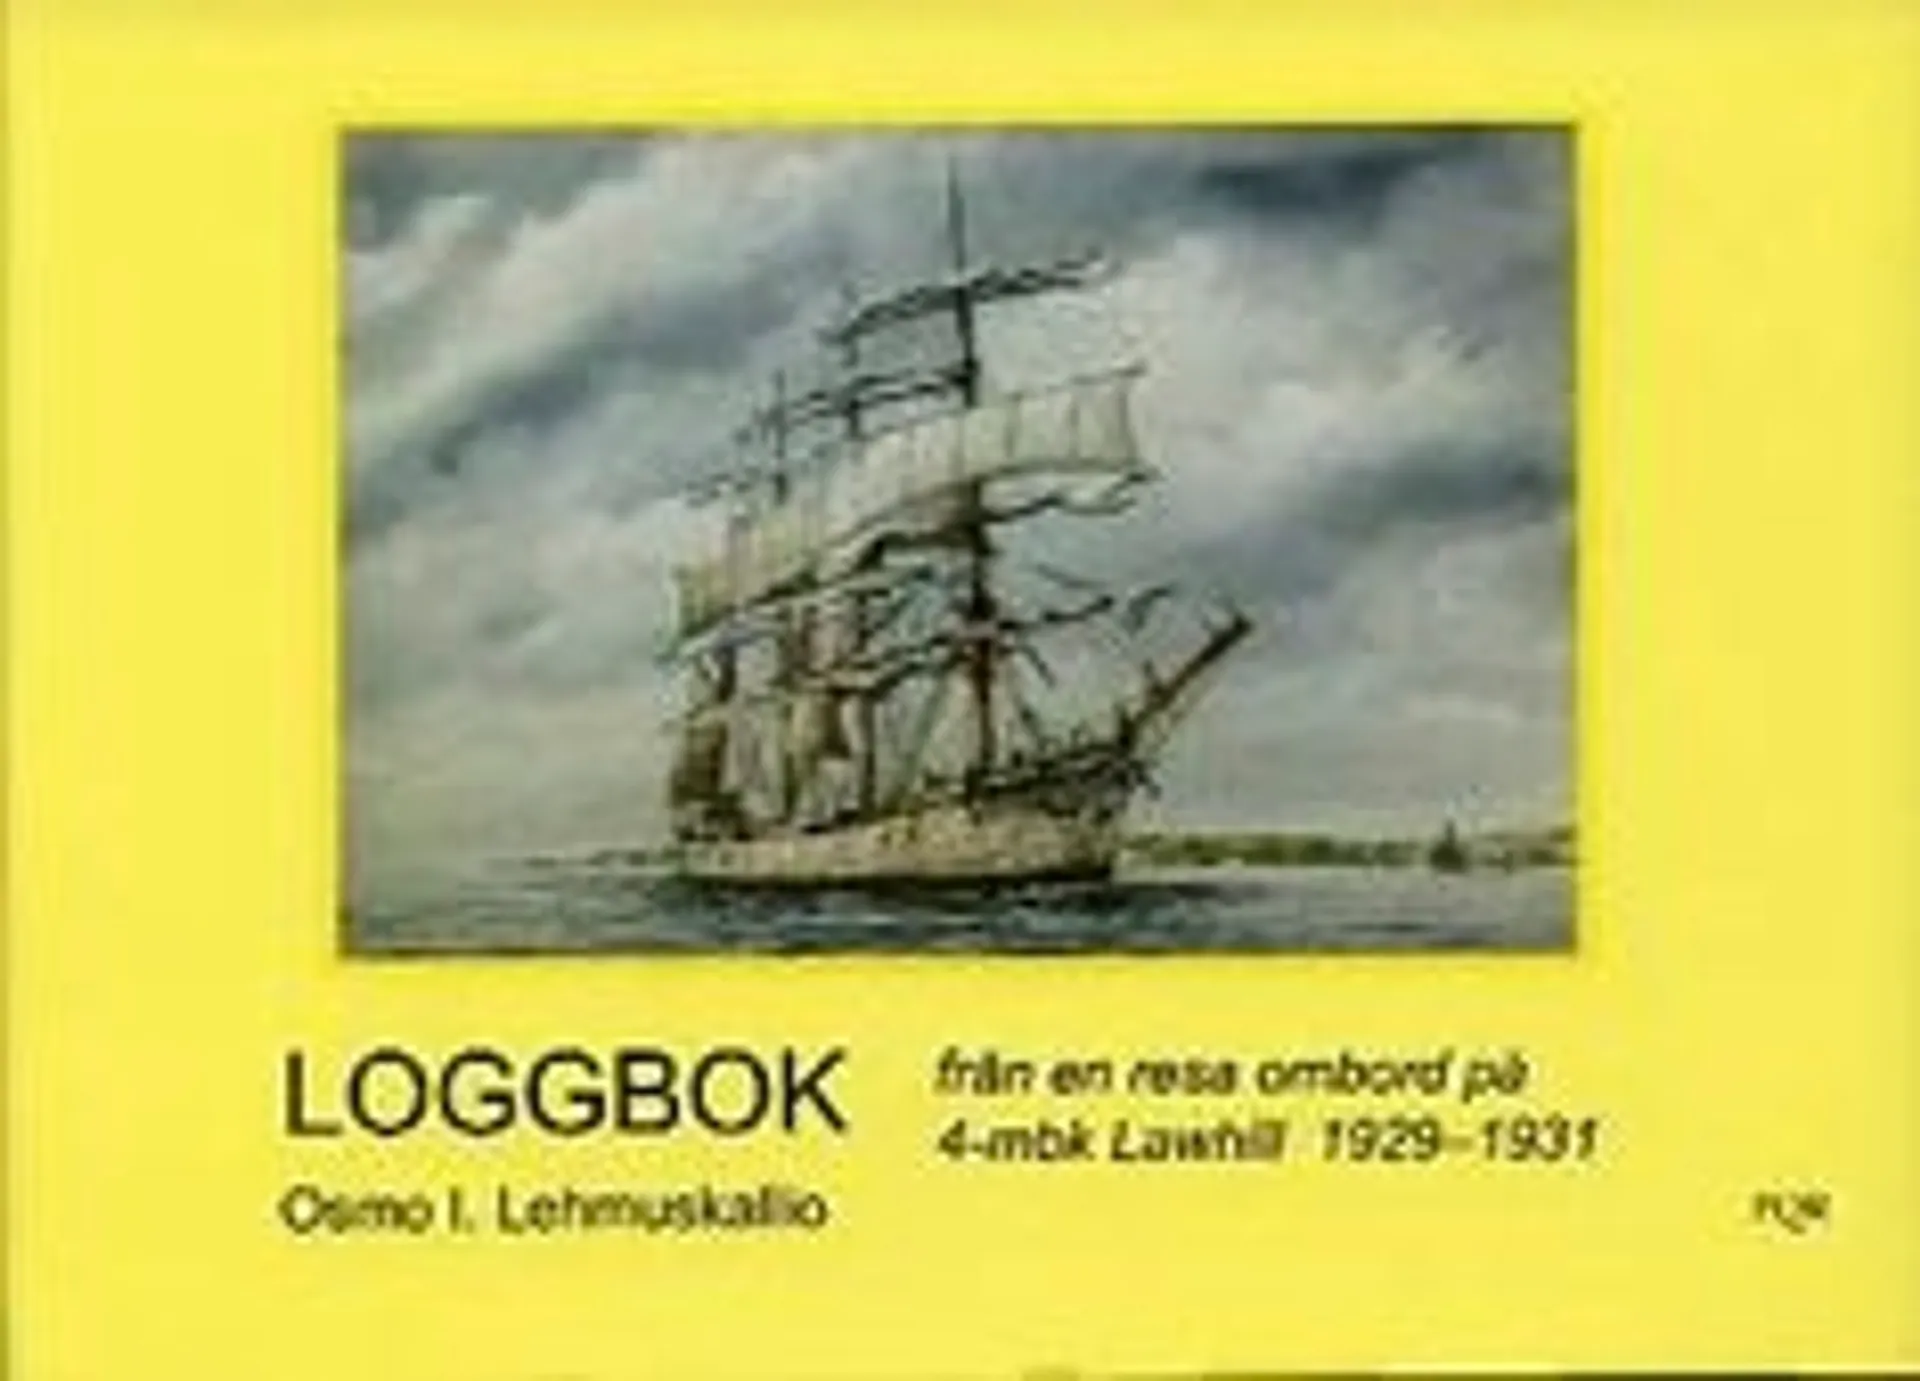 Lehmuskallio, Loggbok från en resa ombord på 4-mbk Lawhill 1929-1931